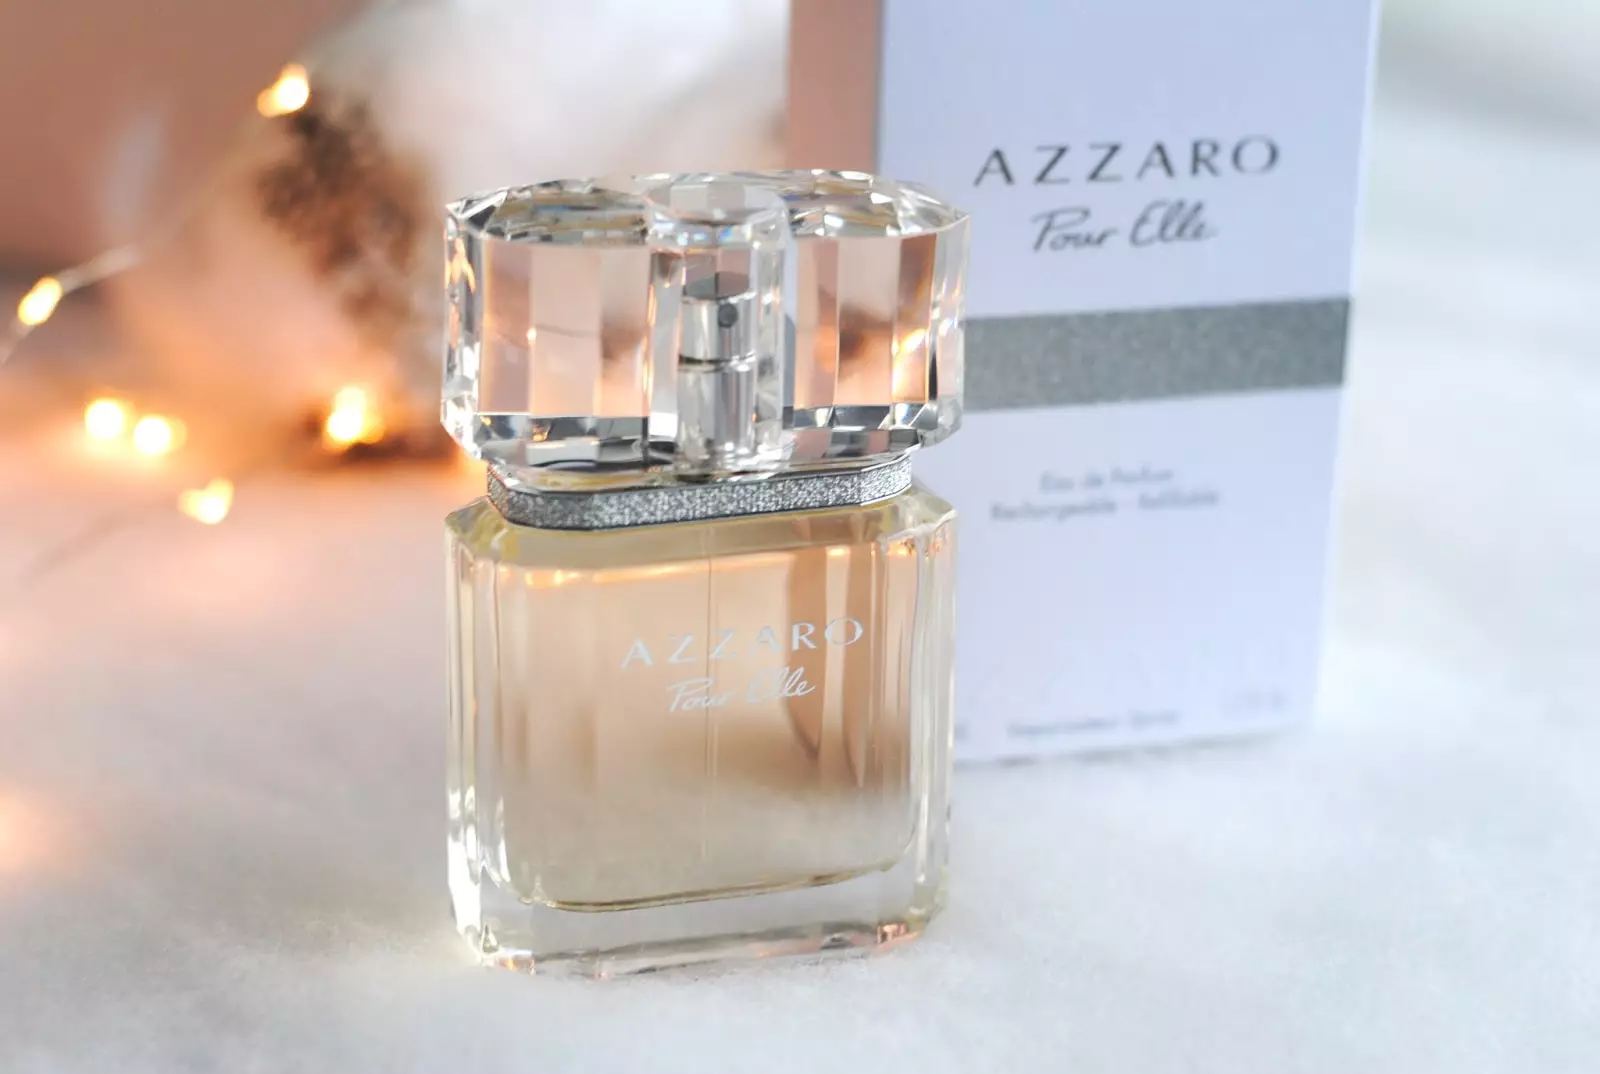 Perfumery Azzaro: Mademoiselle WC Vode i mirise parfema, izvorni ženski parfem, opis Željena djevojka i drugi proizvodi 25334_34